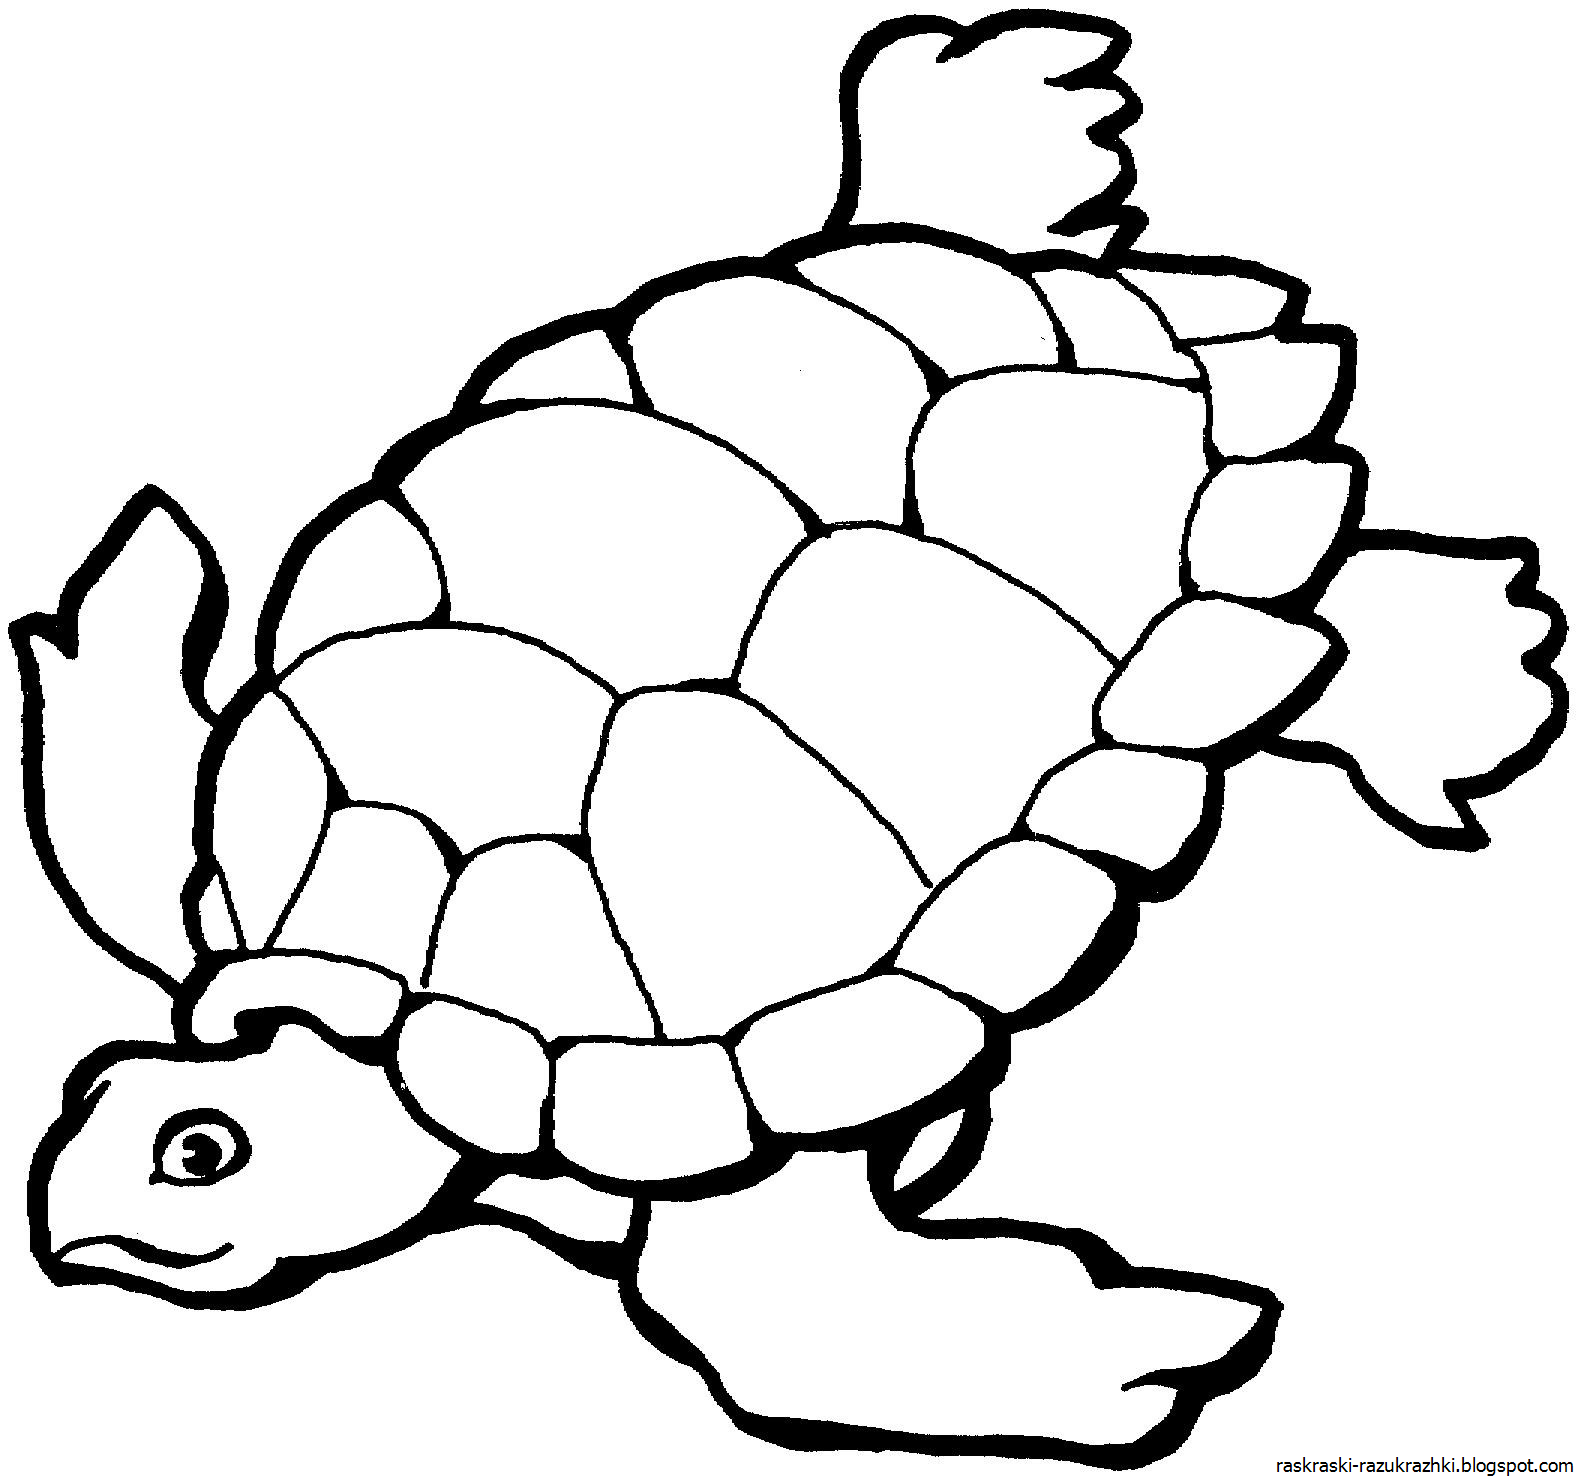 Распечатать картинку черепаха. Черепаха раскраска для детей. Трафареты черепахи. Черепаха шаблон для раскрашивания. Черепашка контур.